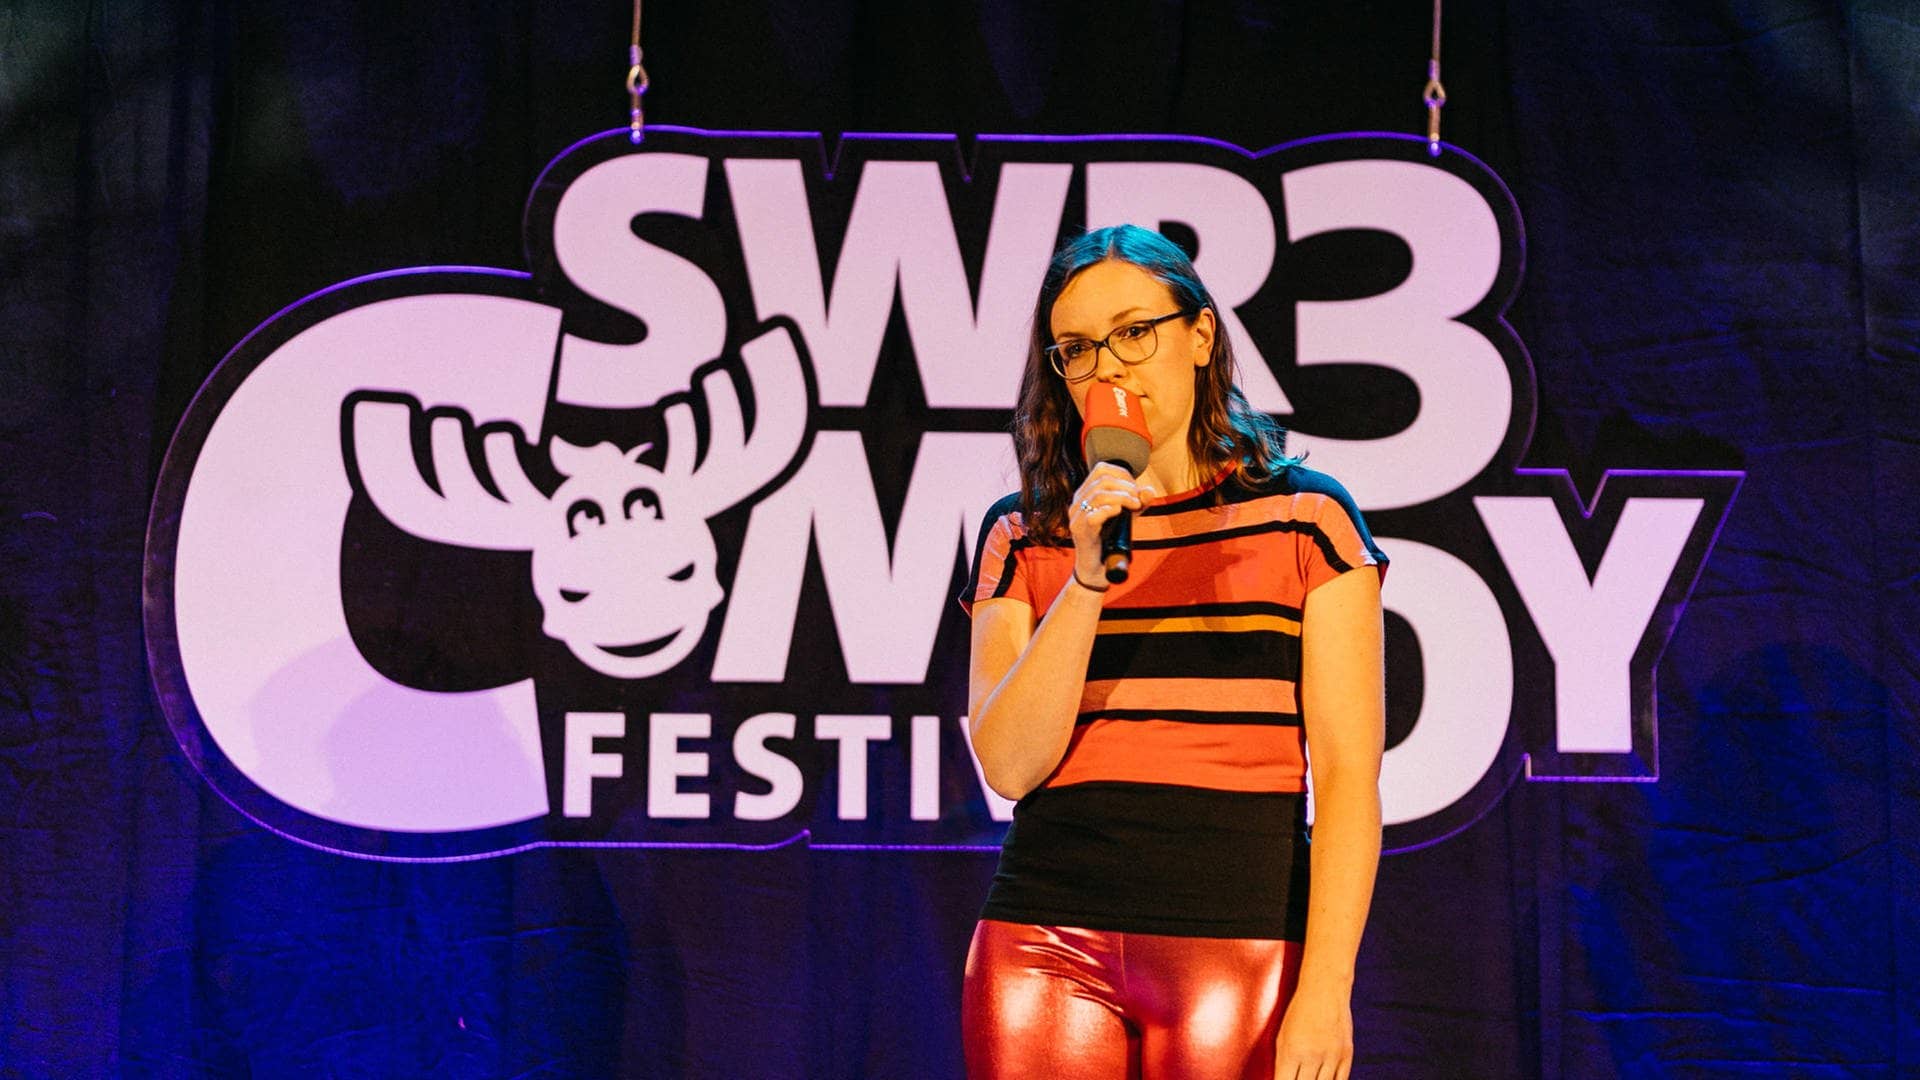 New Comedy beim SWR3 Comedy Festival 2019